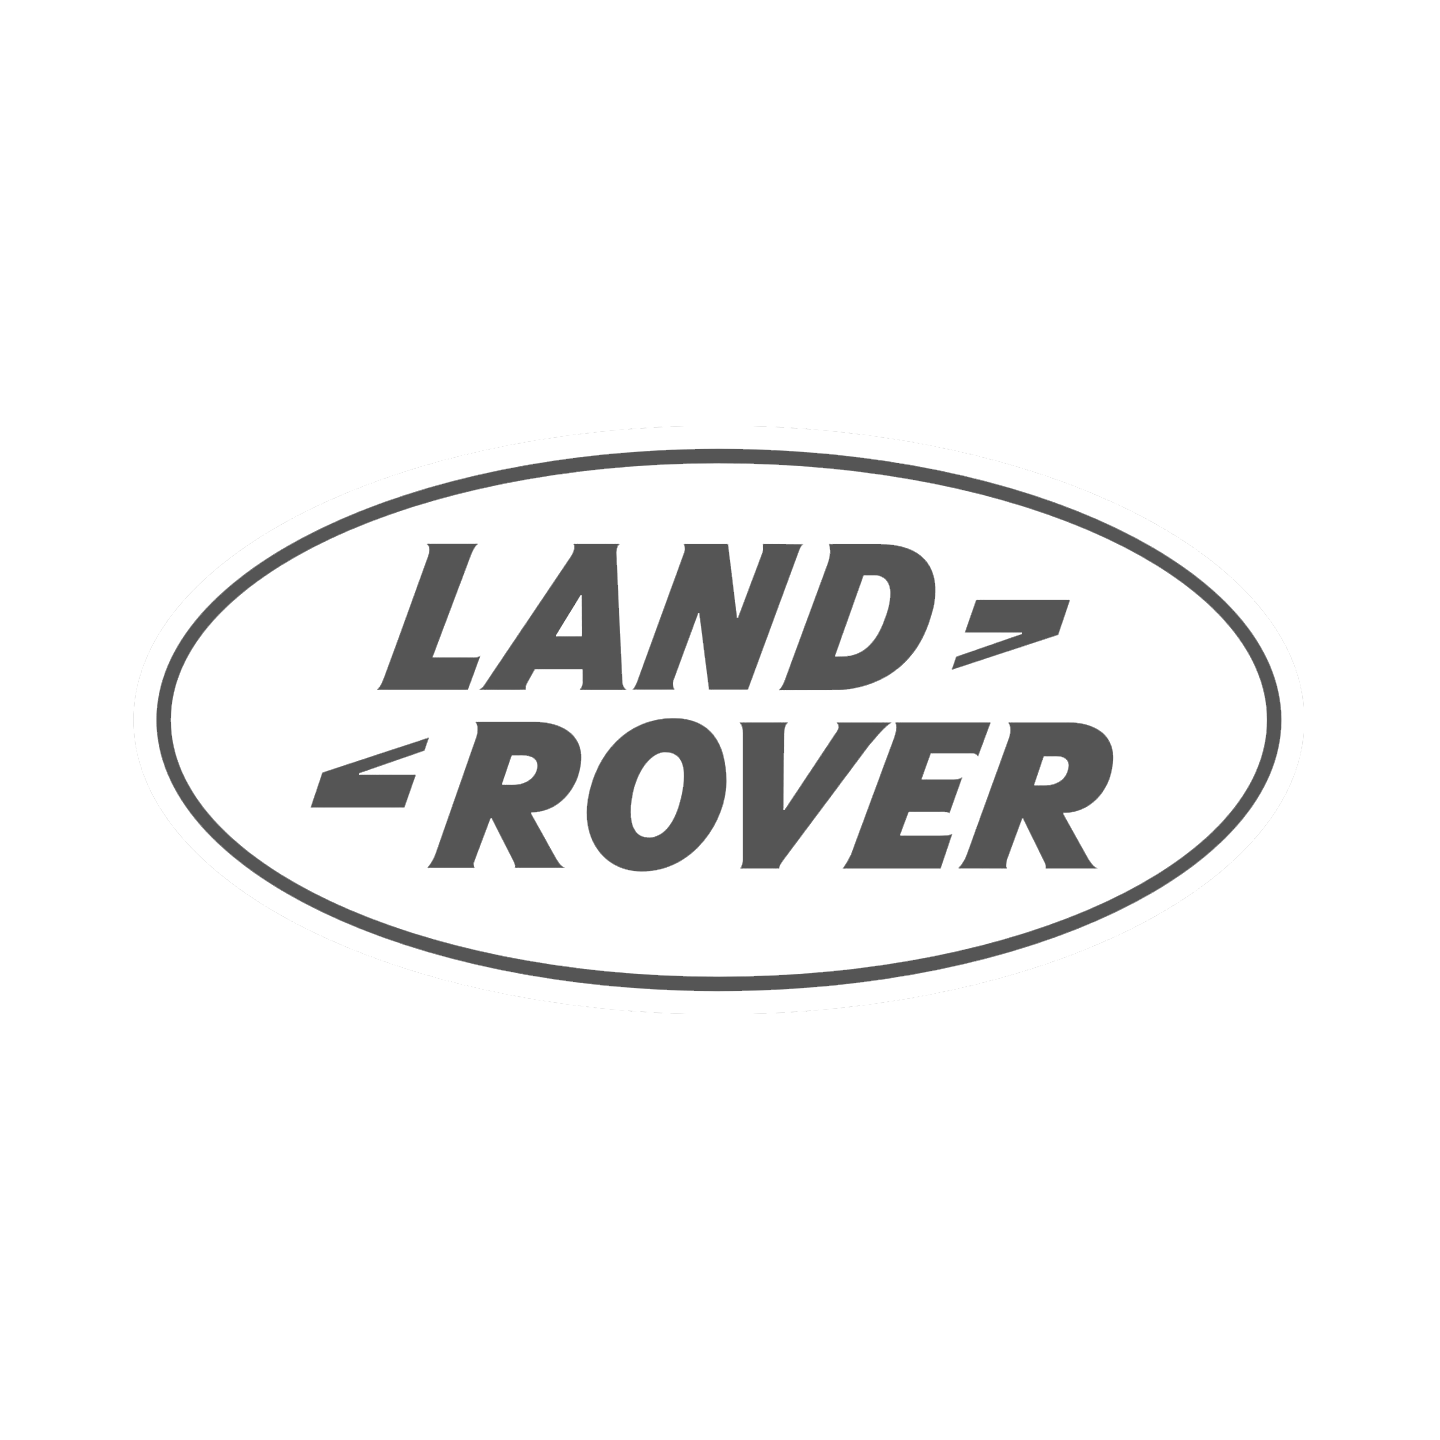 Land-Rover_Gray